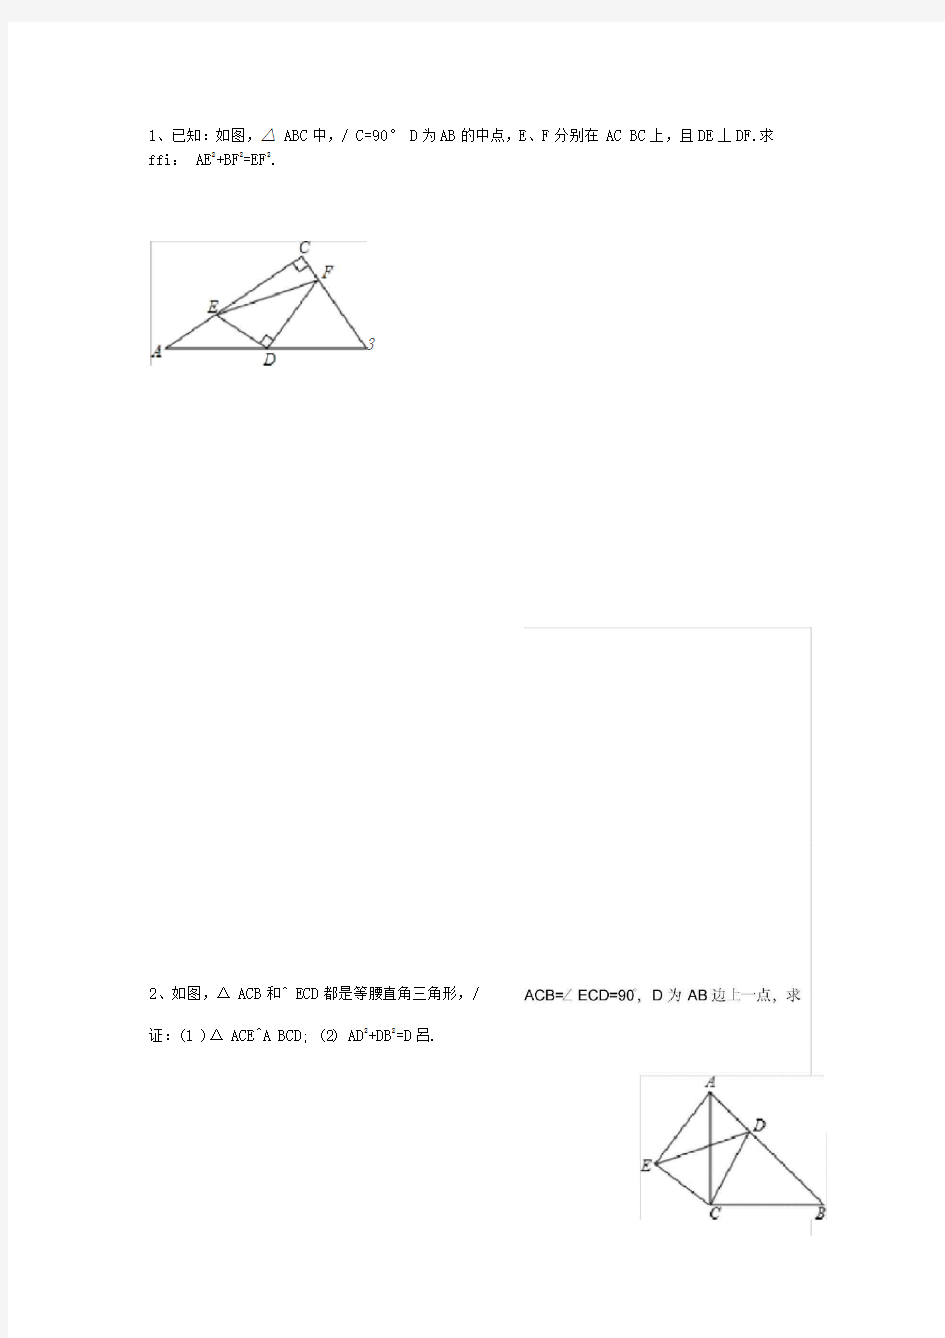 勾股定理与全等三角形